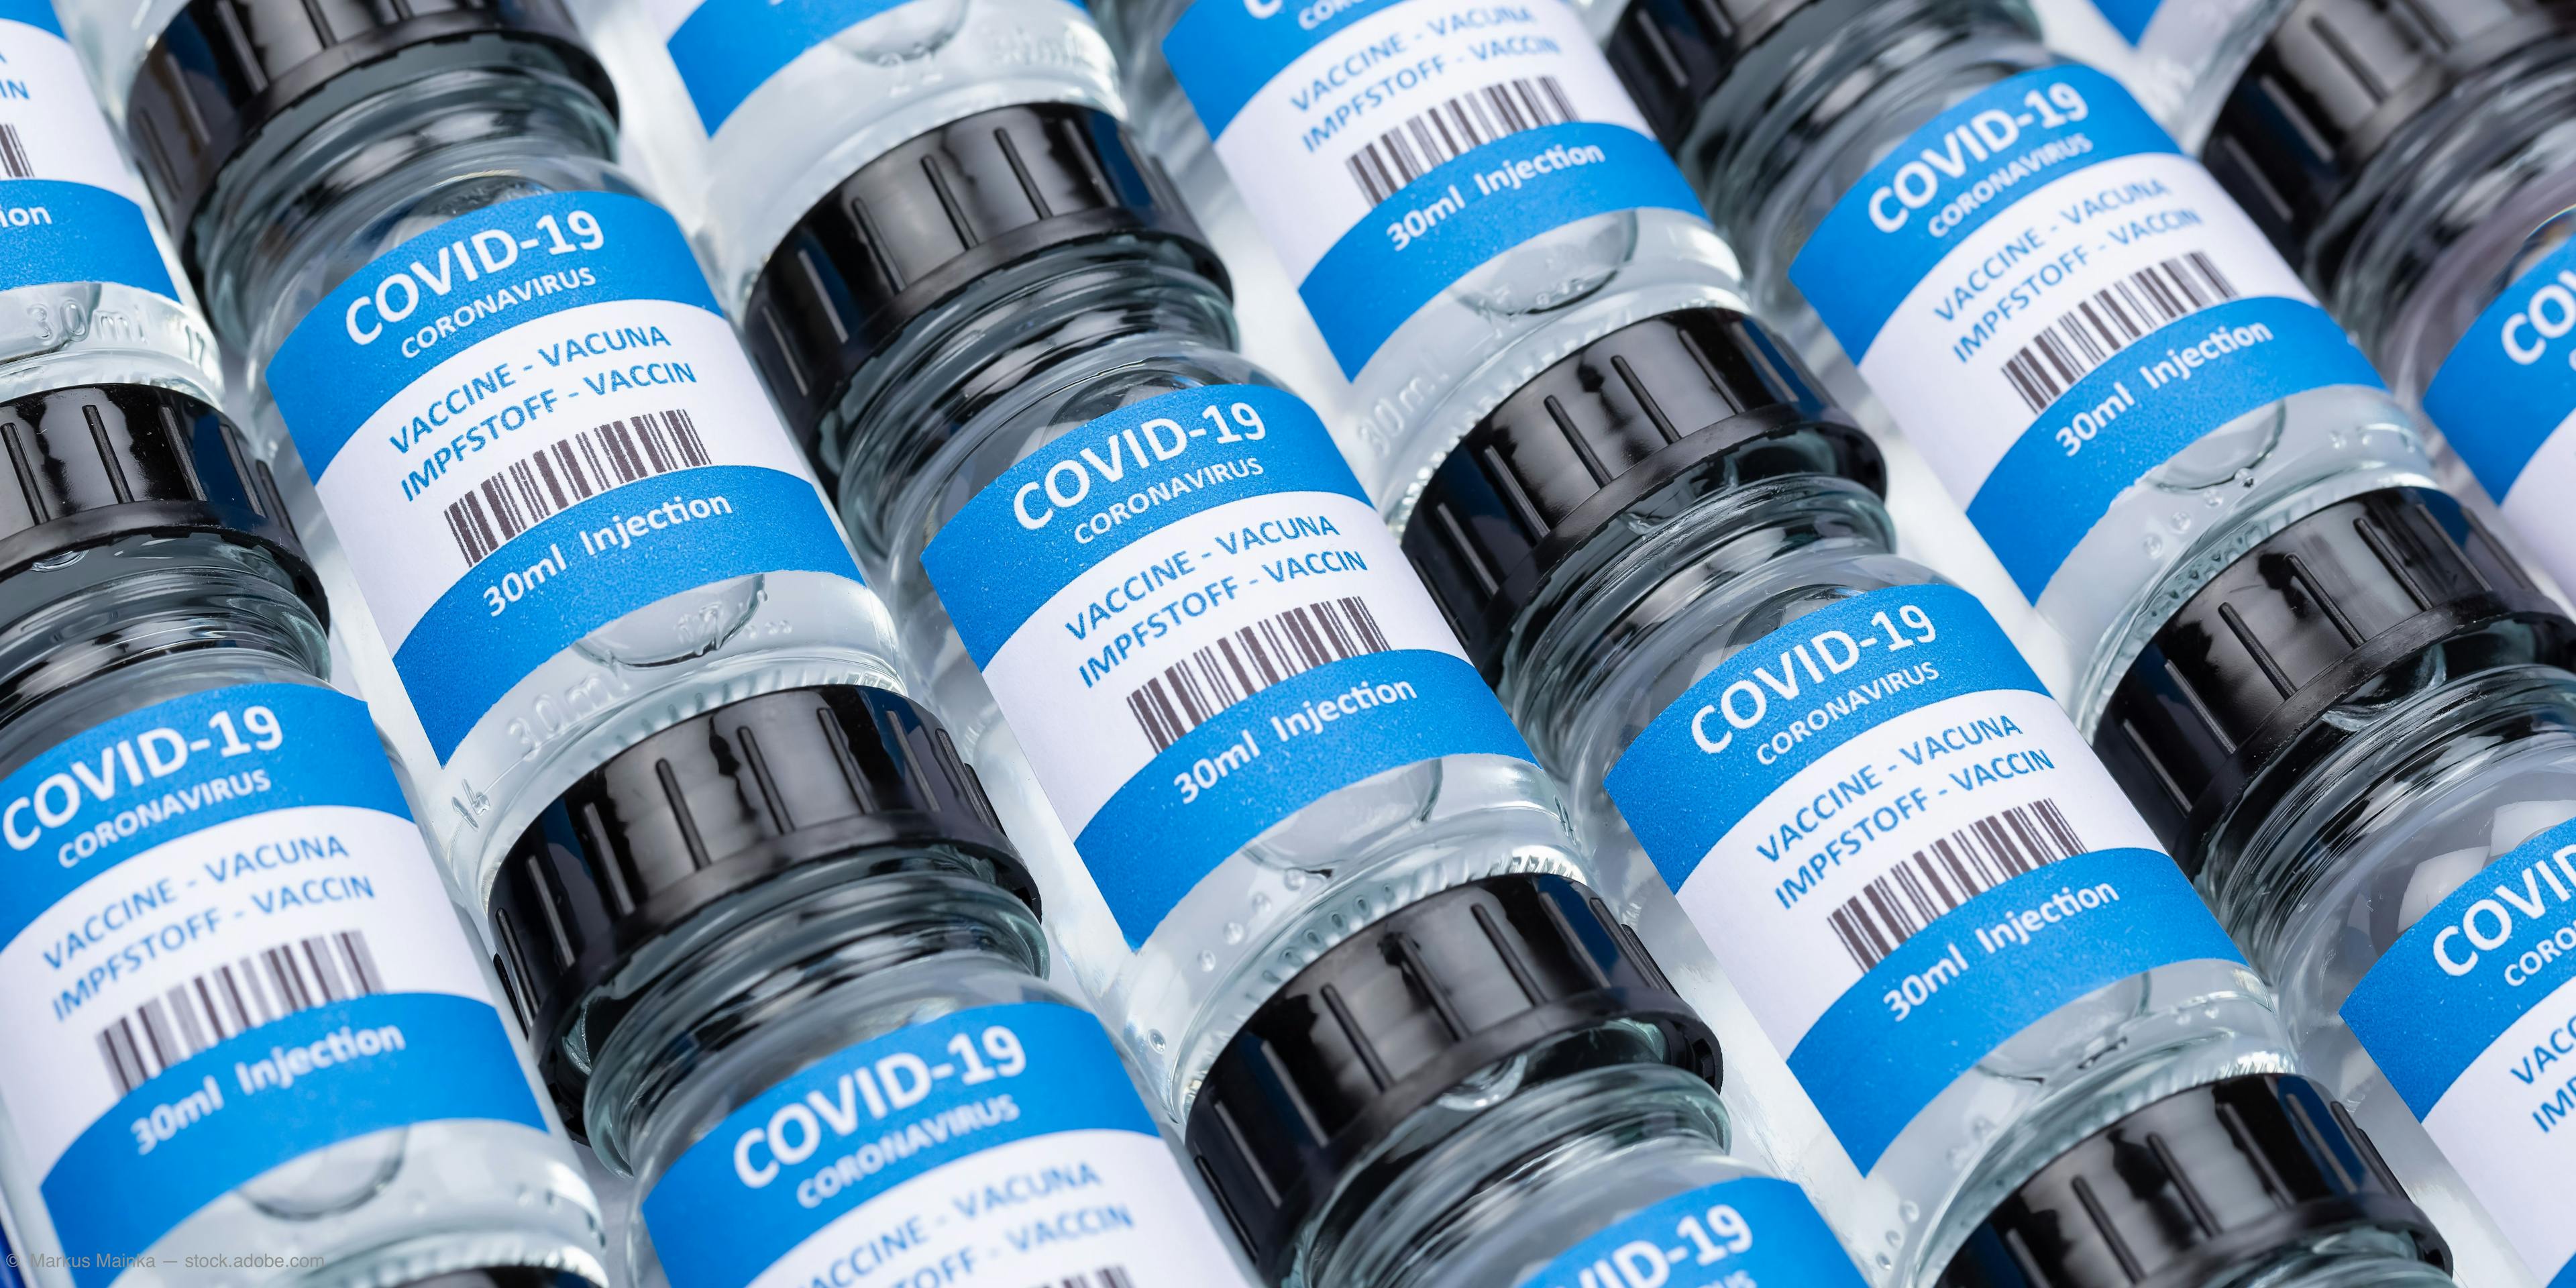 FDA approves Pfizer-BioNTech COVID-19 vaccine